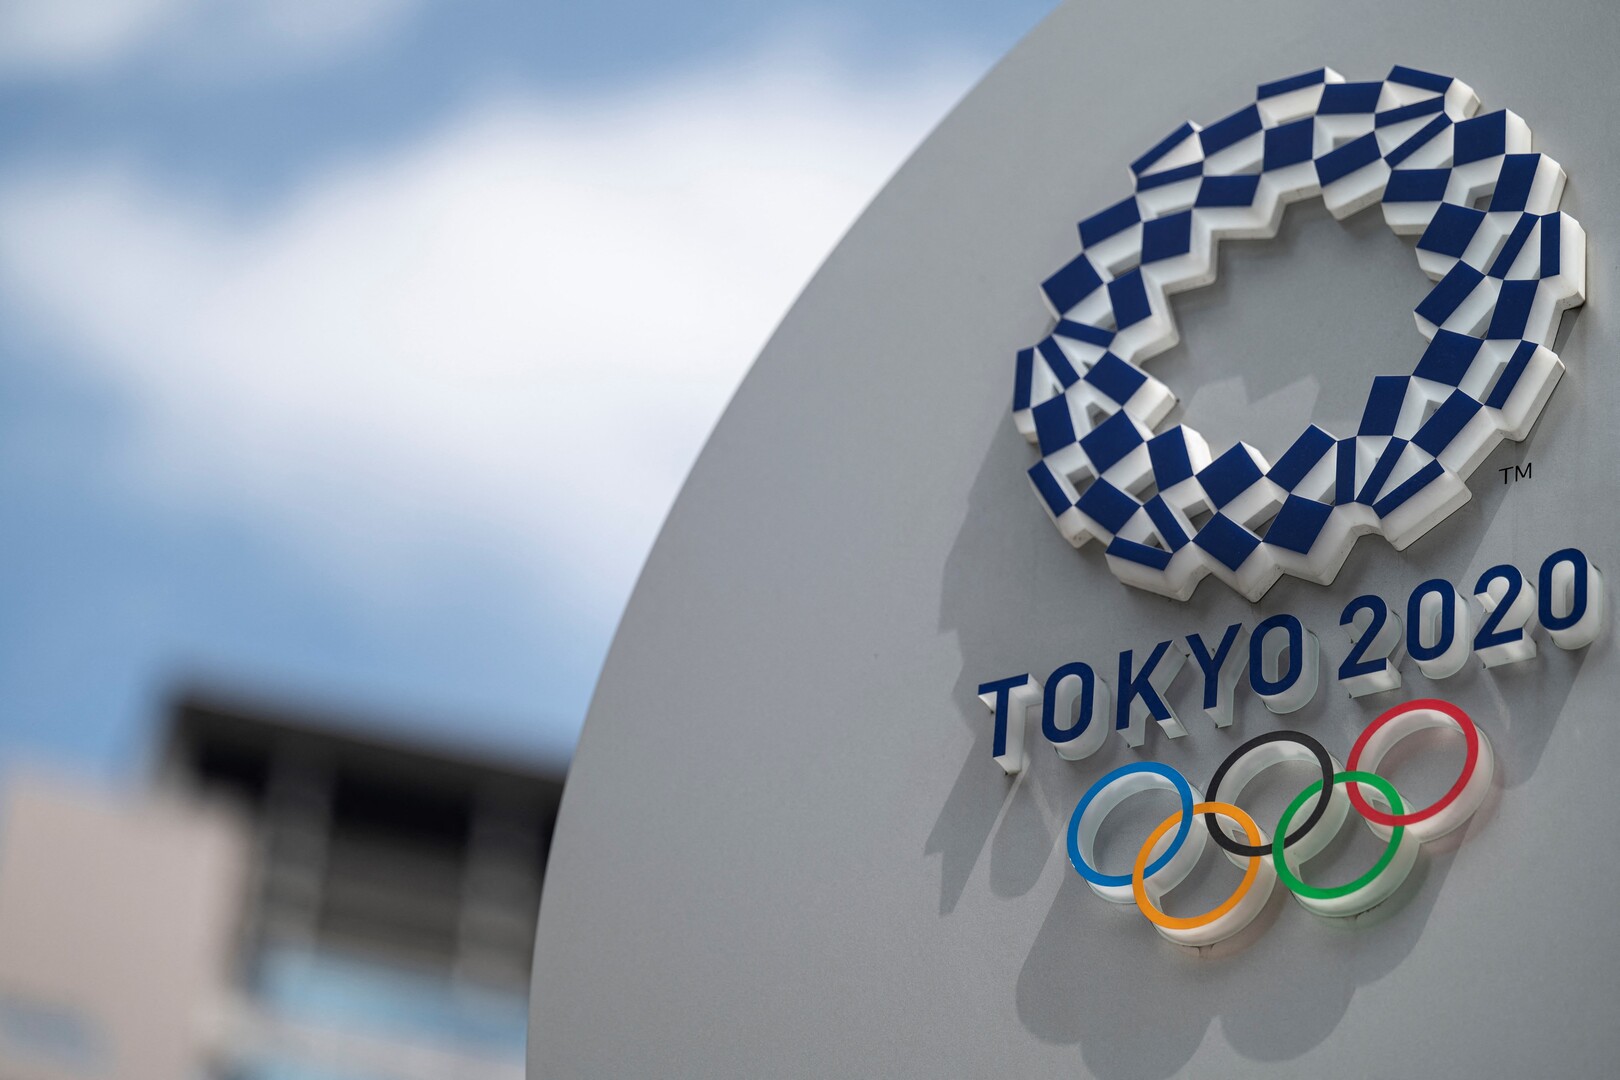 بسبب كورونا .. اليابان تدرس تنظيم مراسم افتتاح اولمبياد طوكيو دون جمهور